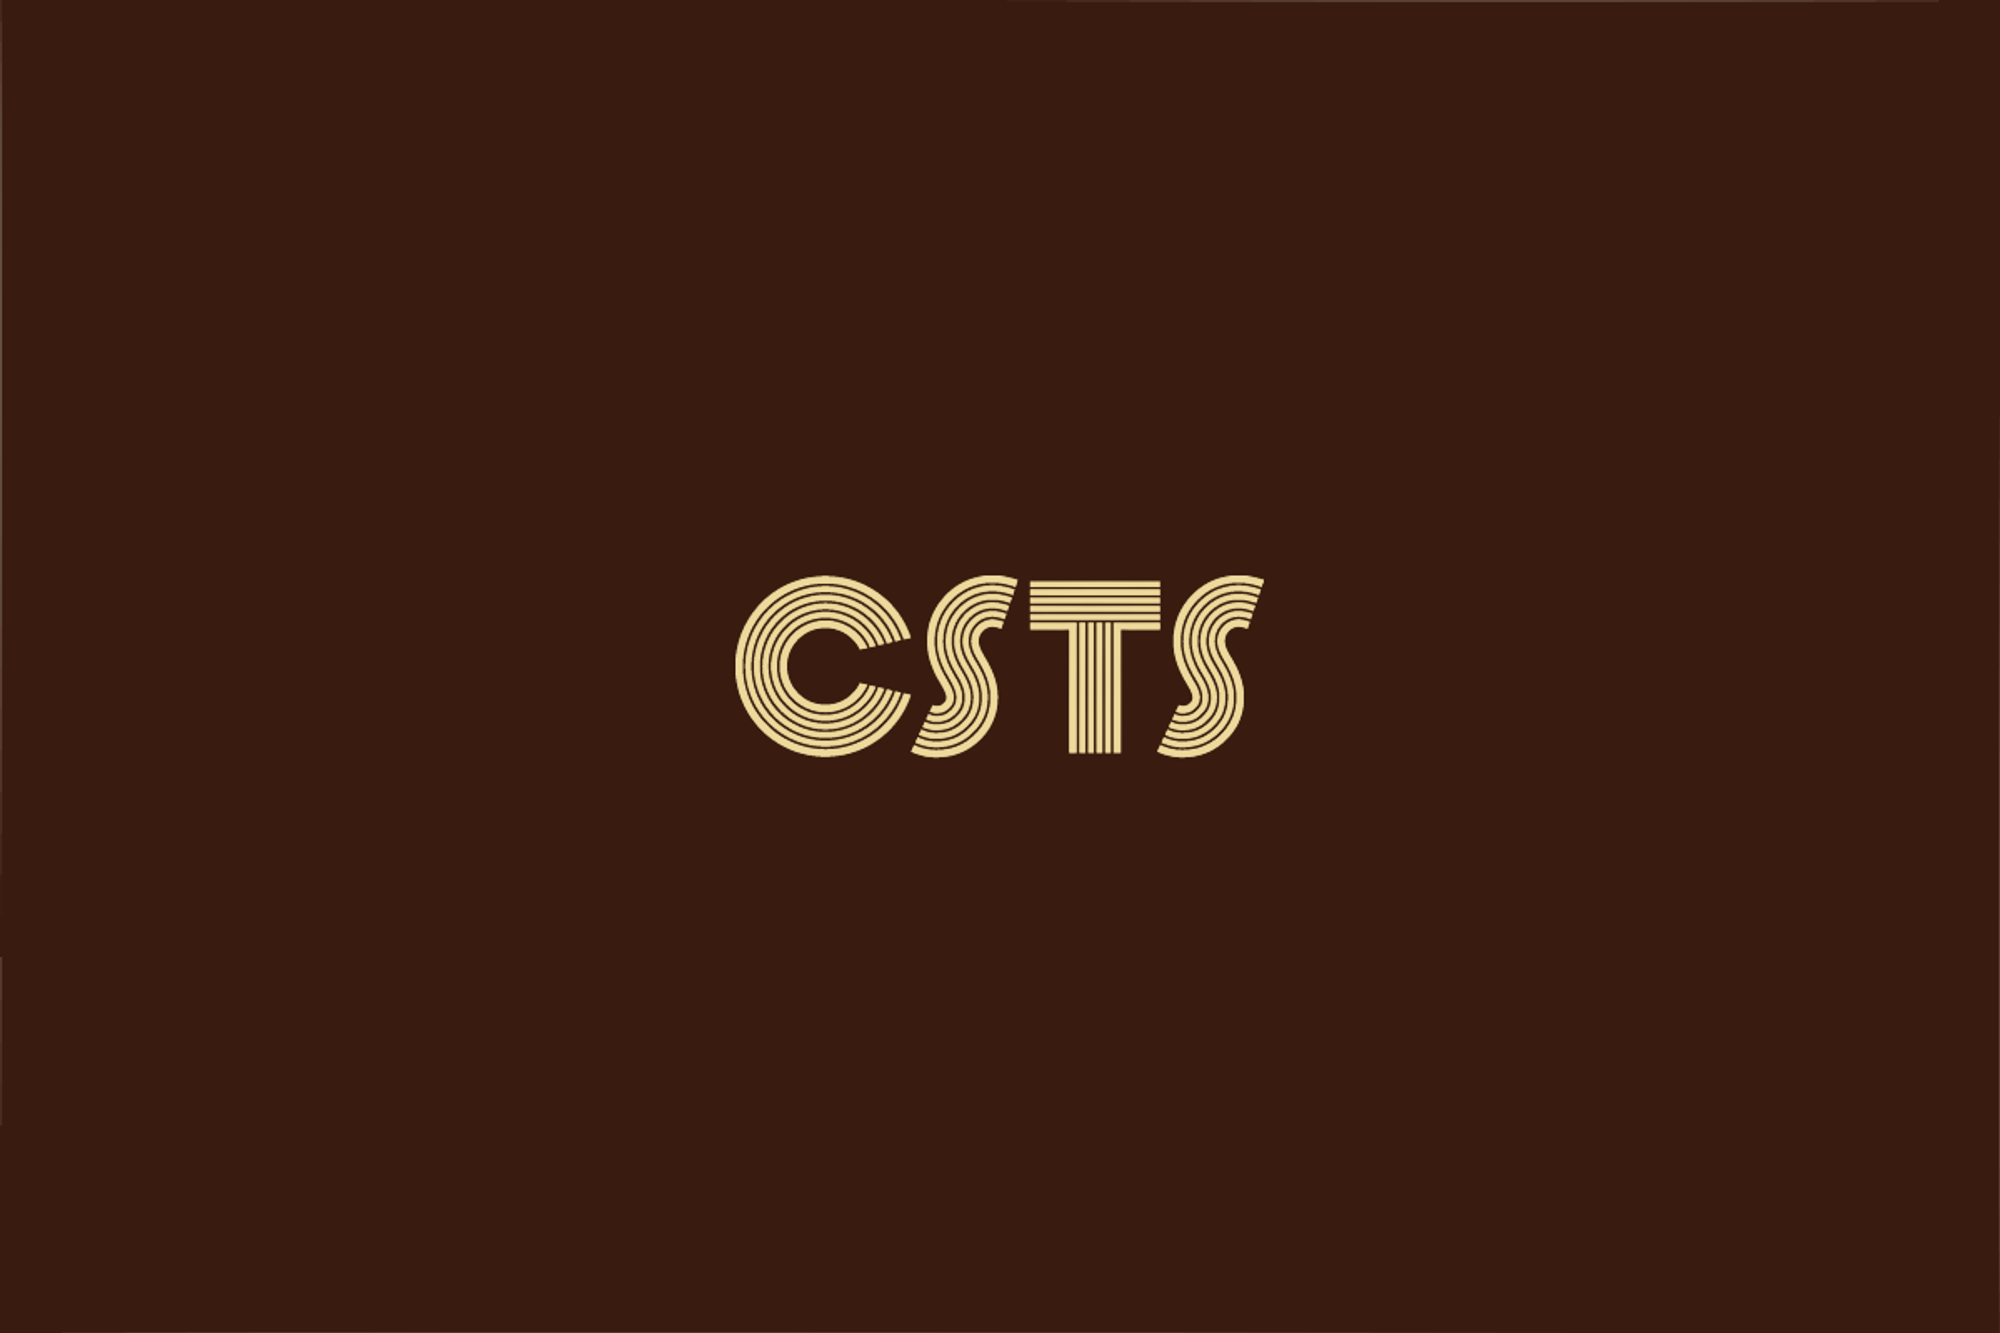 CSTS 세 장 요약 - (3) 테스트 프로세스